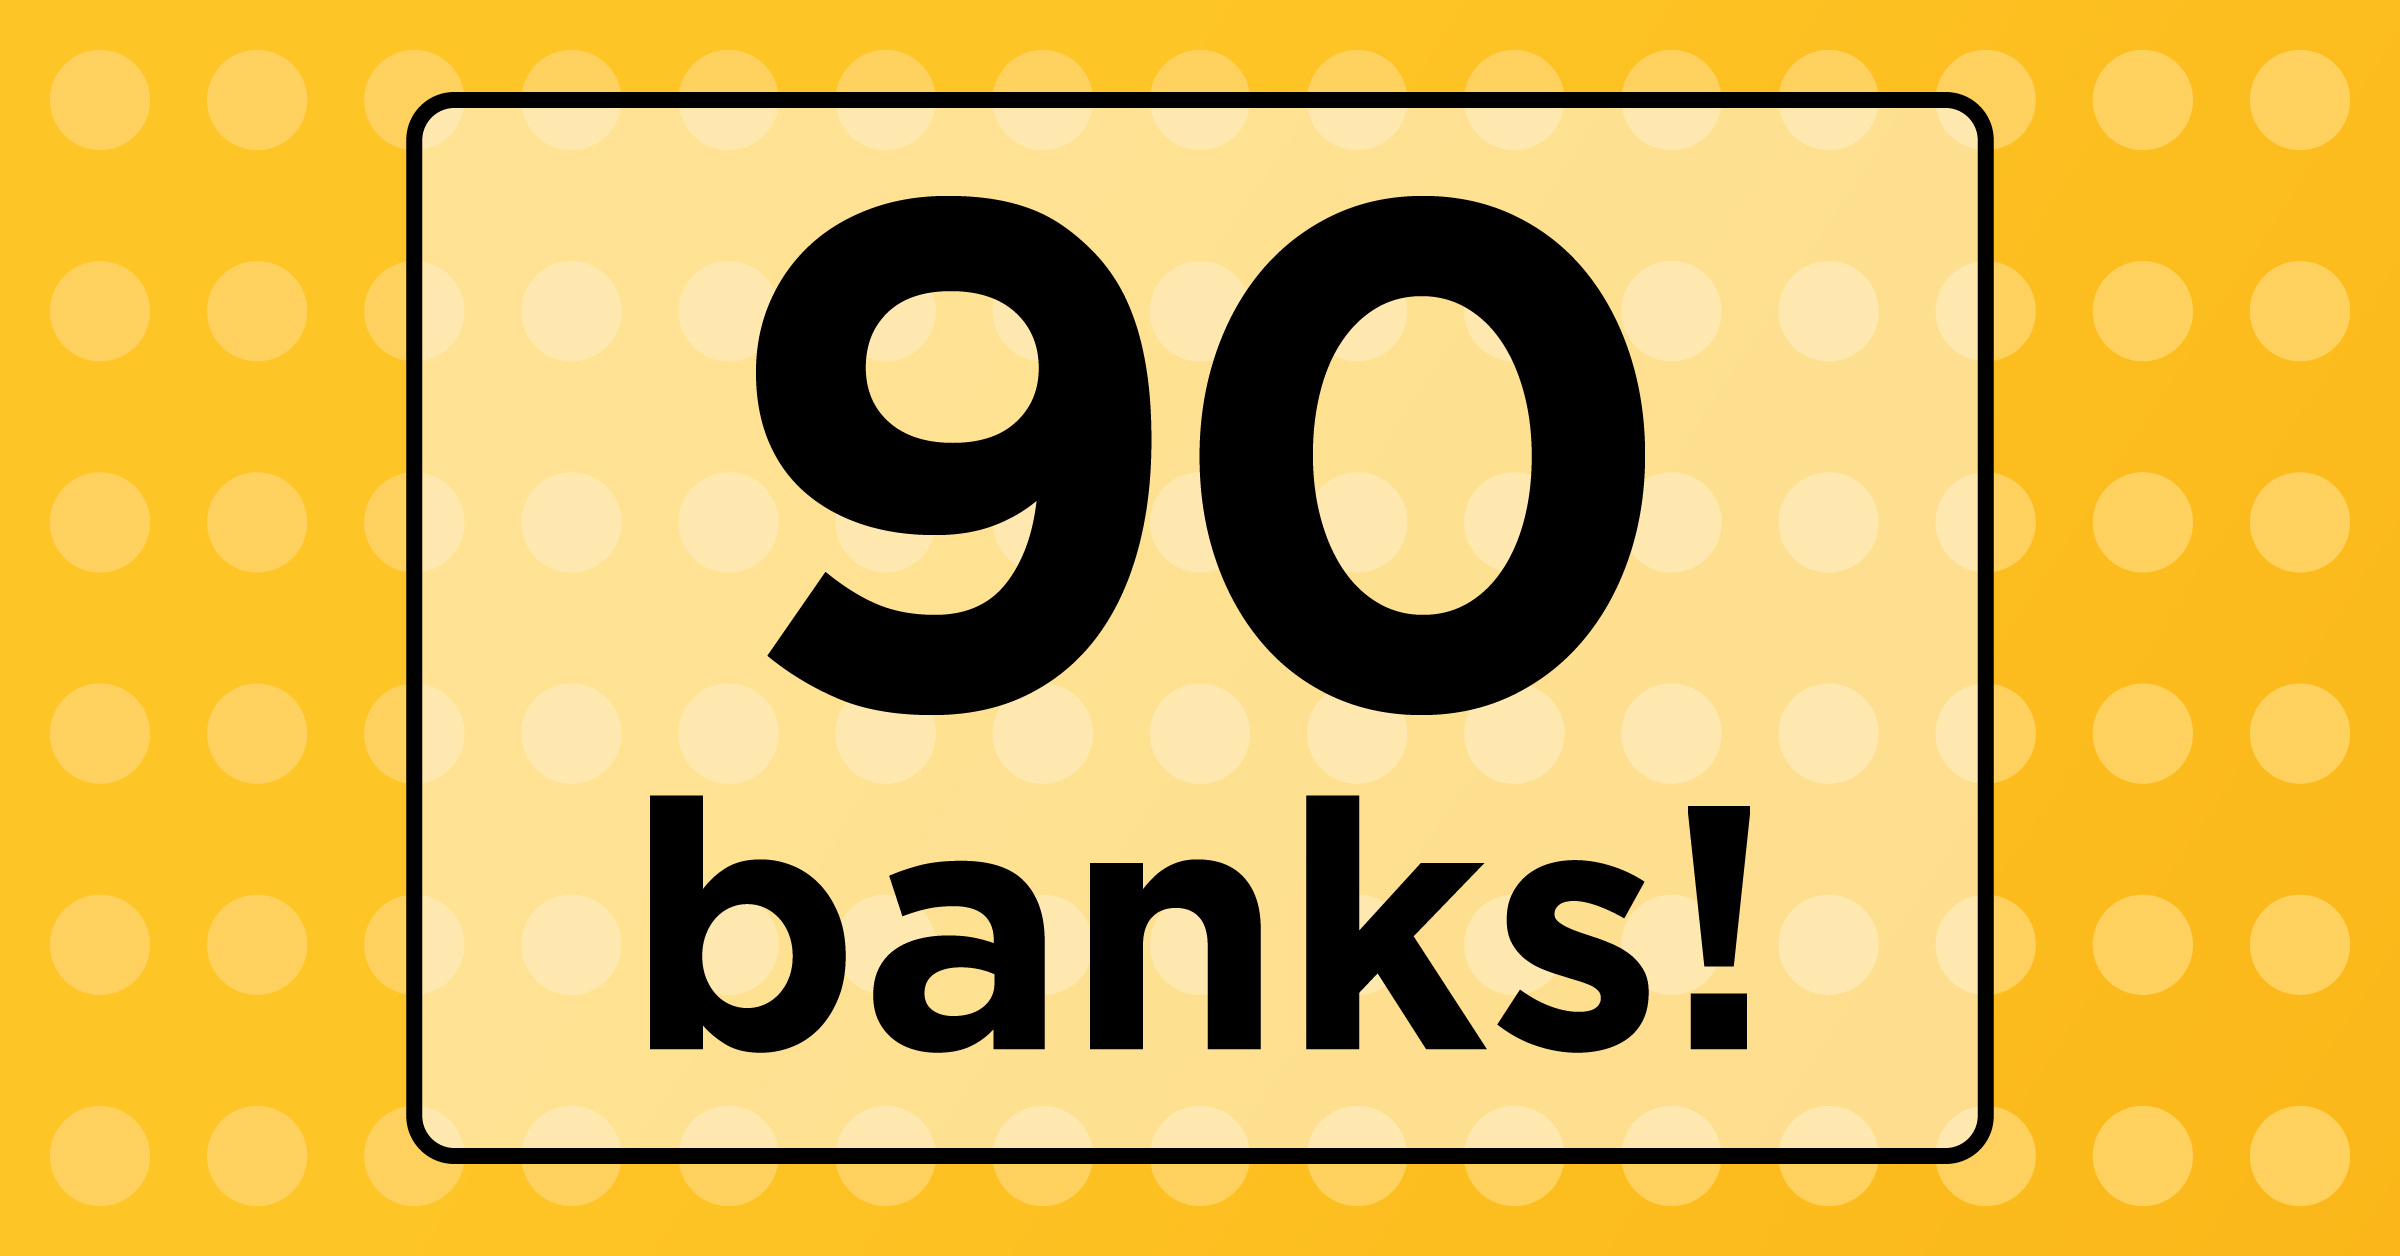 90 Banks!